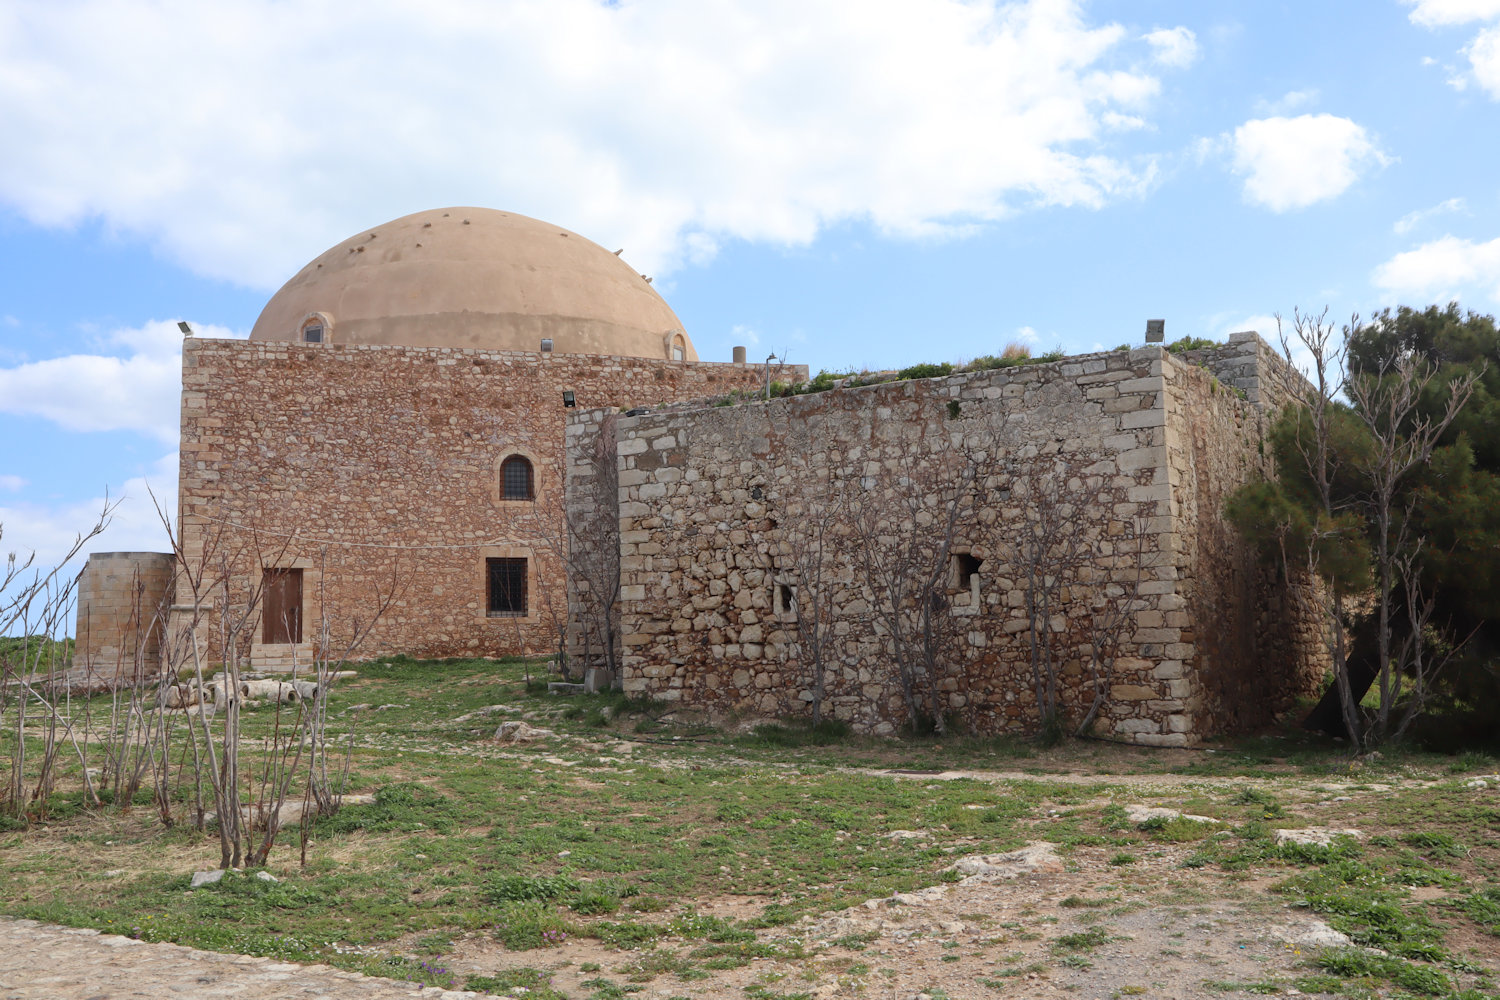 Sultan Ibrahim Moschee in der Festung in Rethymno, gebaut 1656 an der Stelle der vorherigen Kathedrale von Rethymno, und davor das Gebäude, das früher als Bischofspalast diente